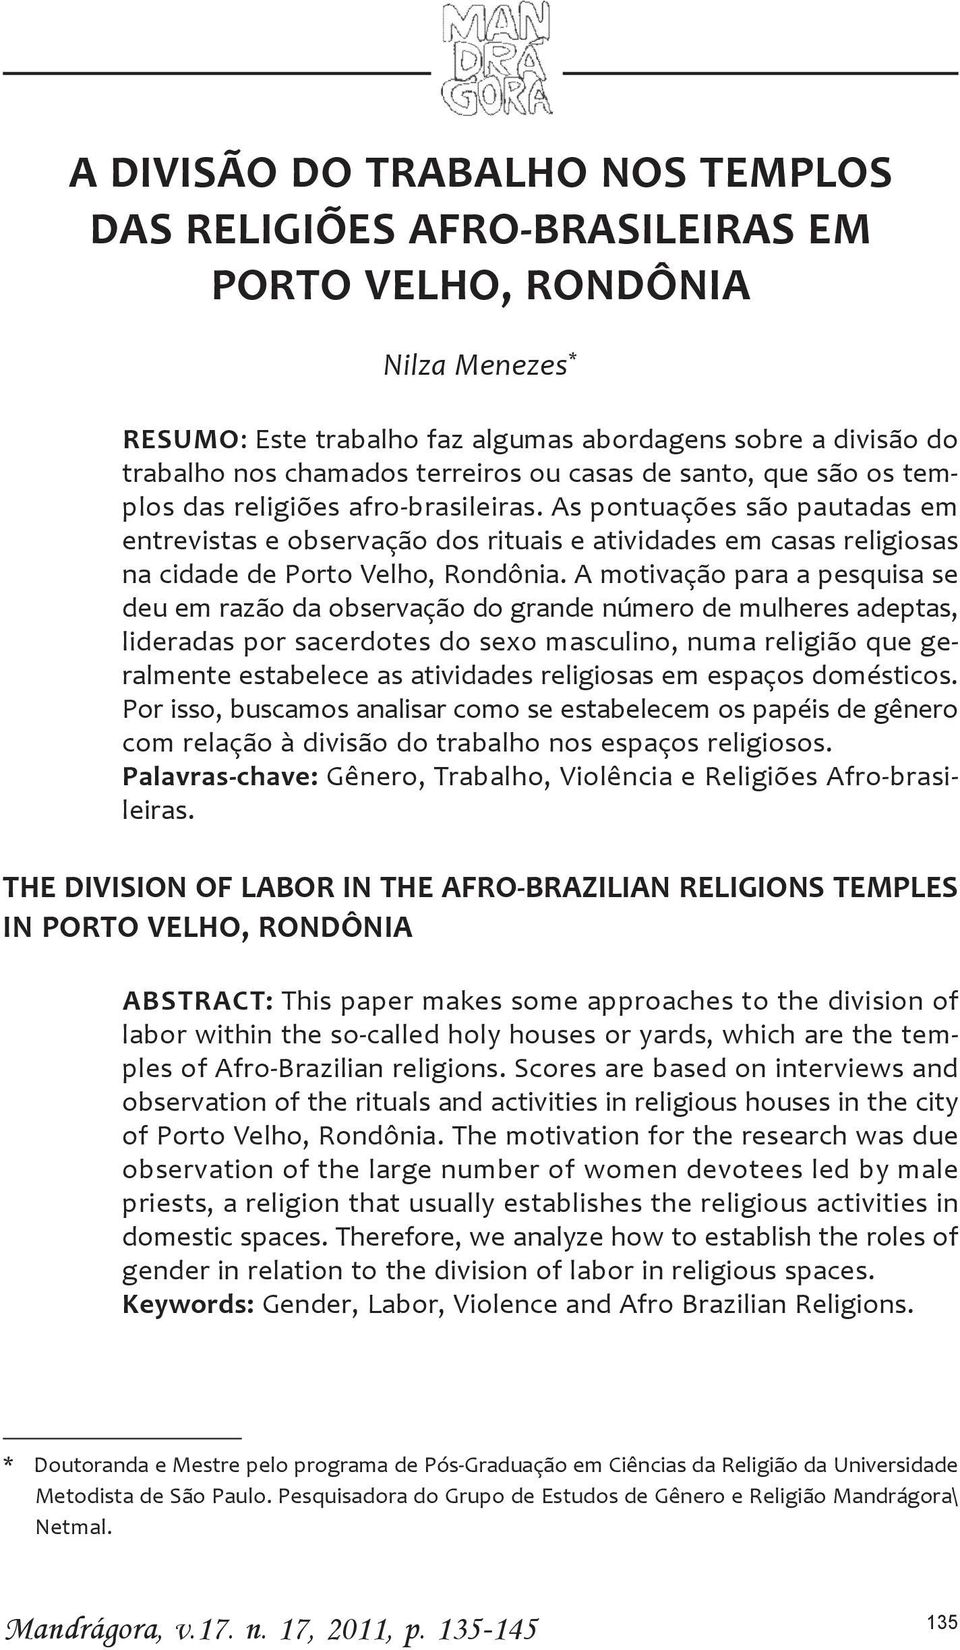 As pontuações são pautadas em entrevistas e observação dos rituais e atividades em casas religiosas na cidade de Porto Velho, Rondônia.